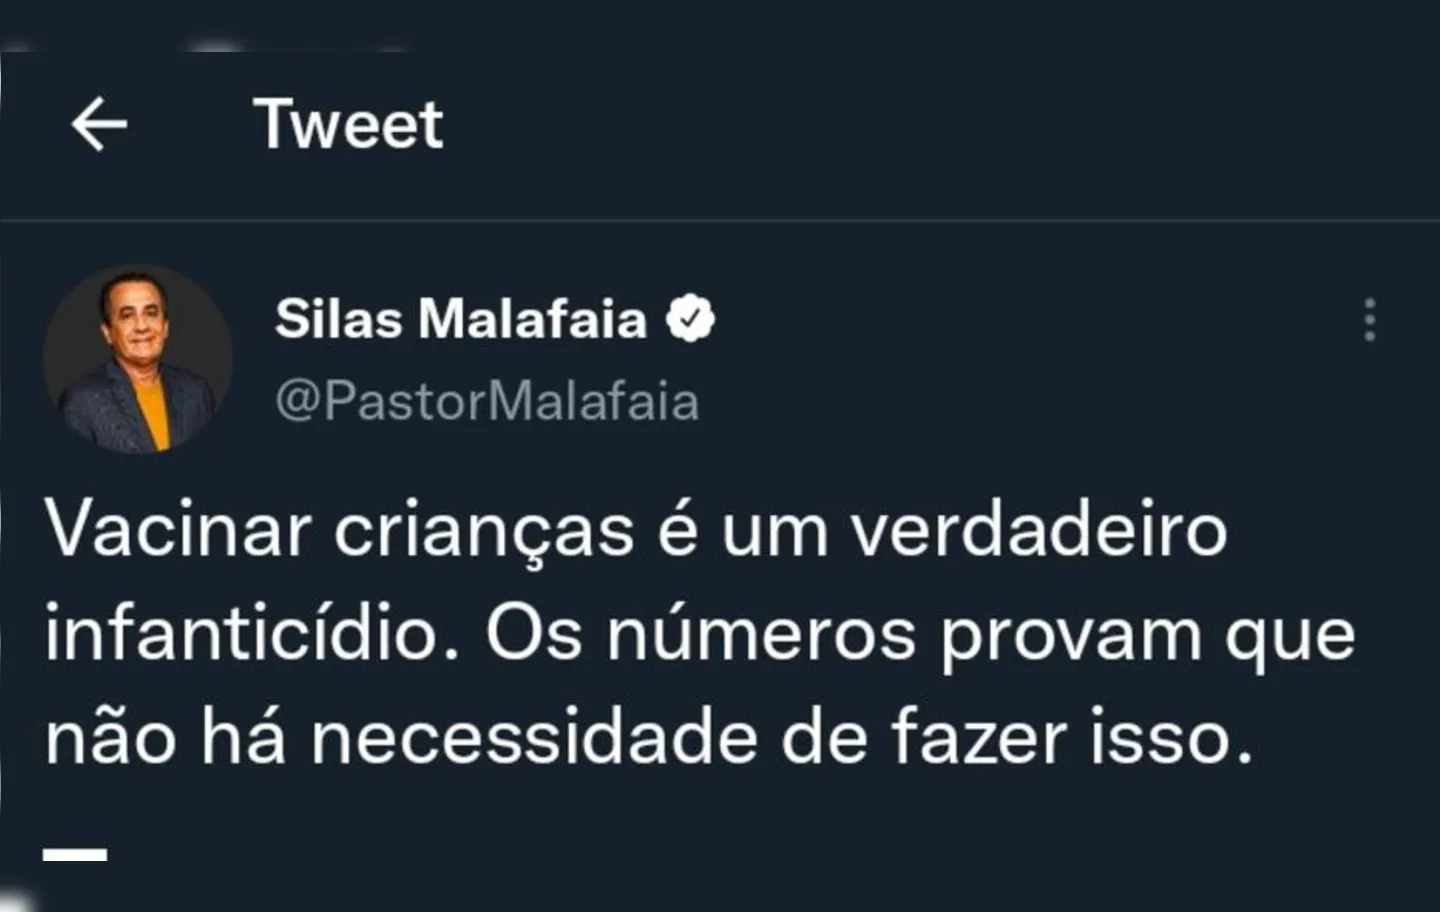 O pastor, é alinhado ideologicamente com o presidente Jair Bolsonaro (PL), que também tem posição contrária à vacinação em crianças